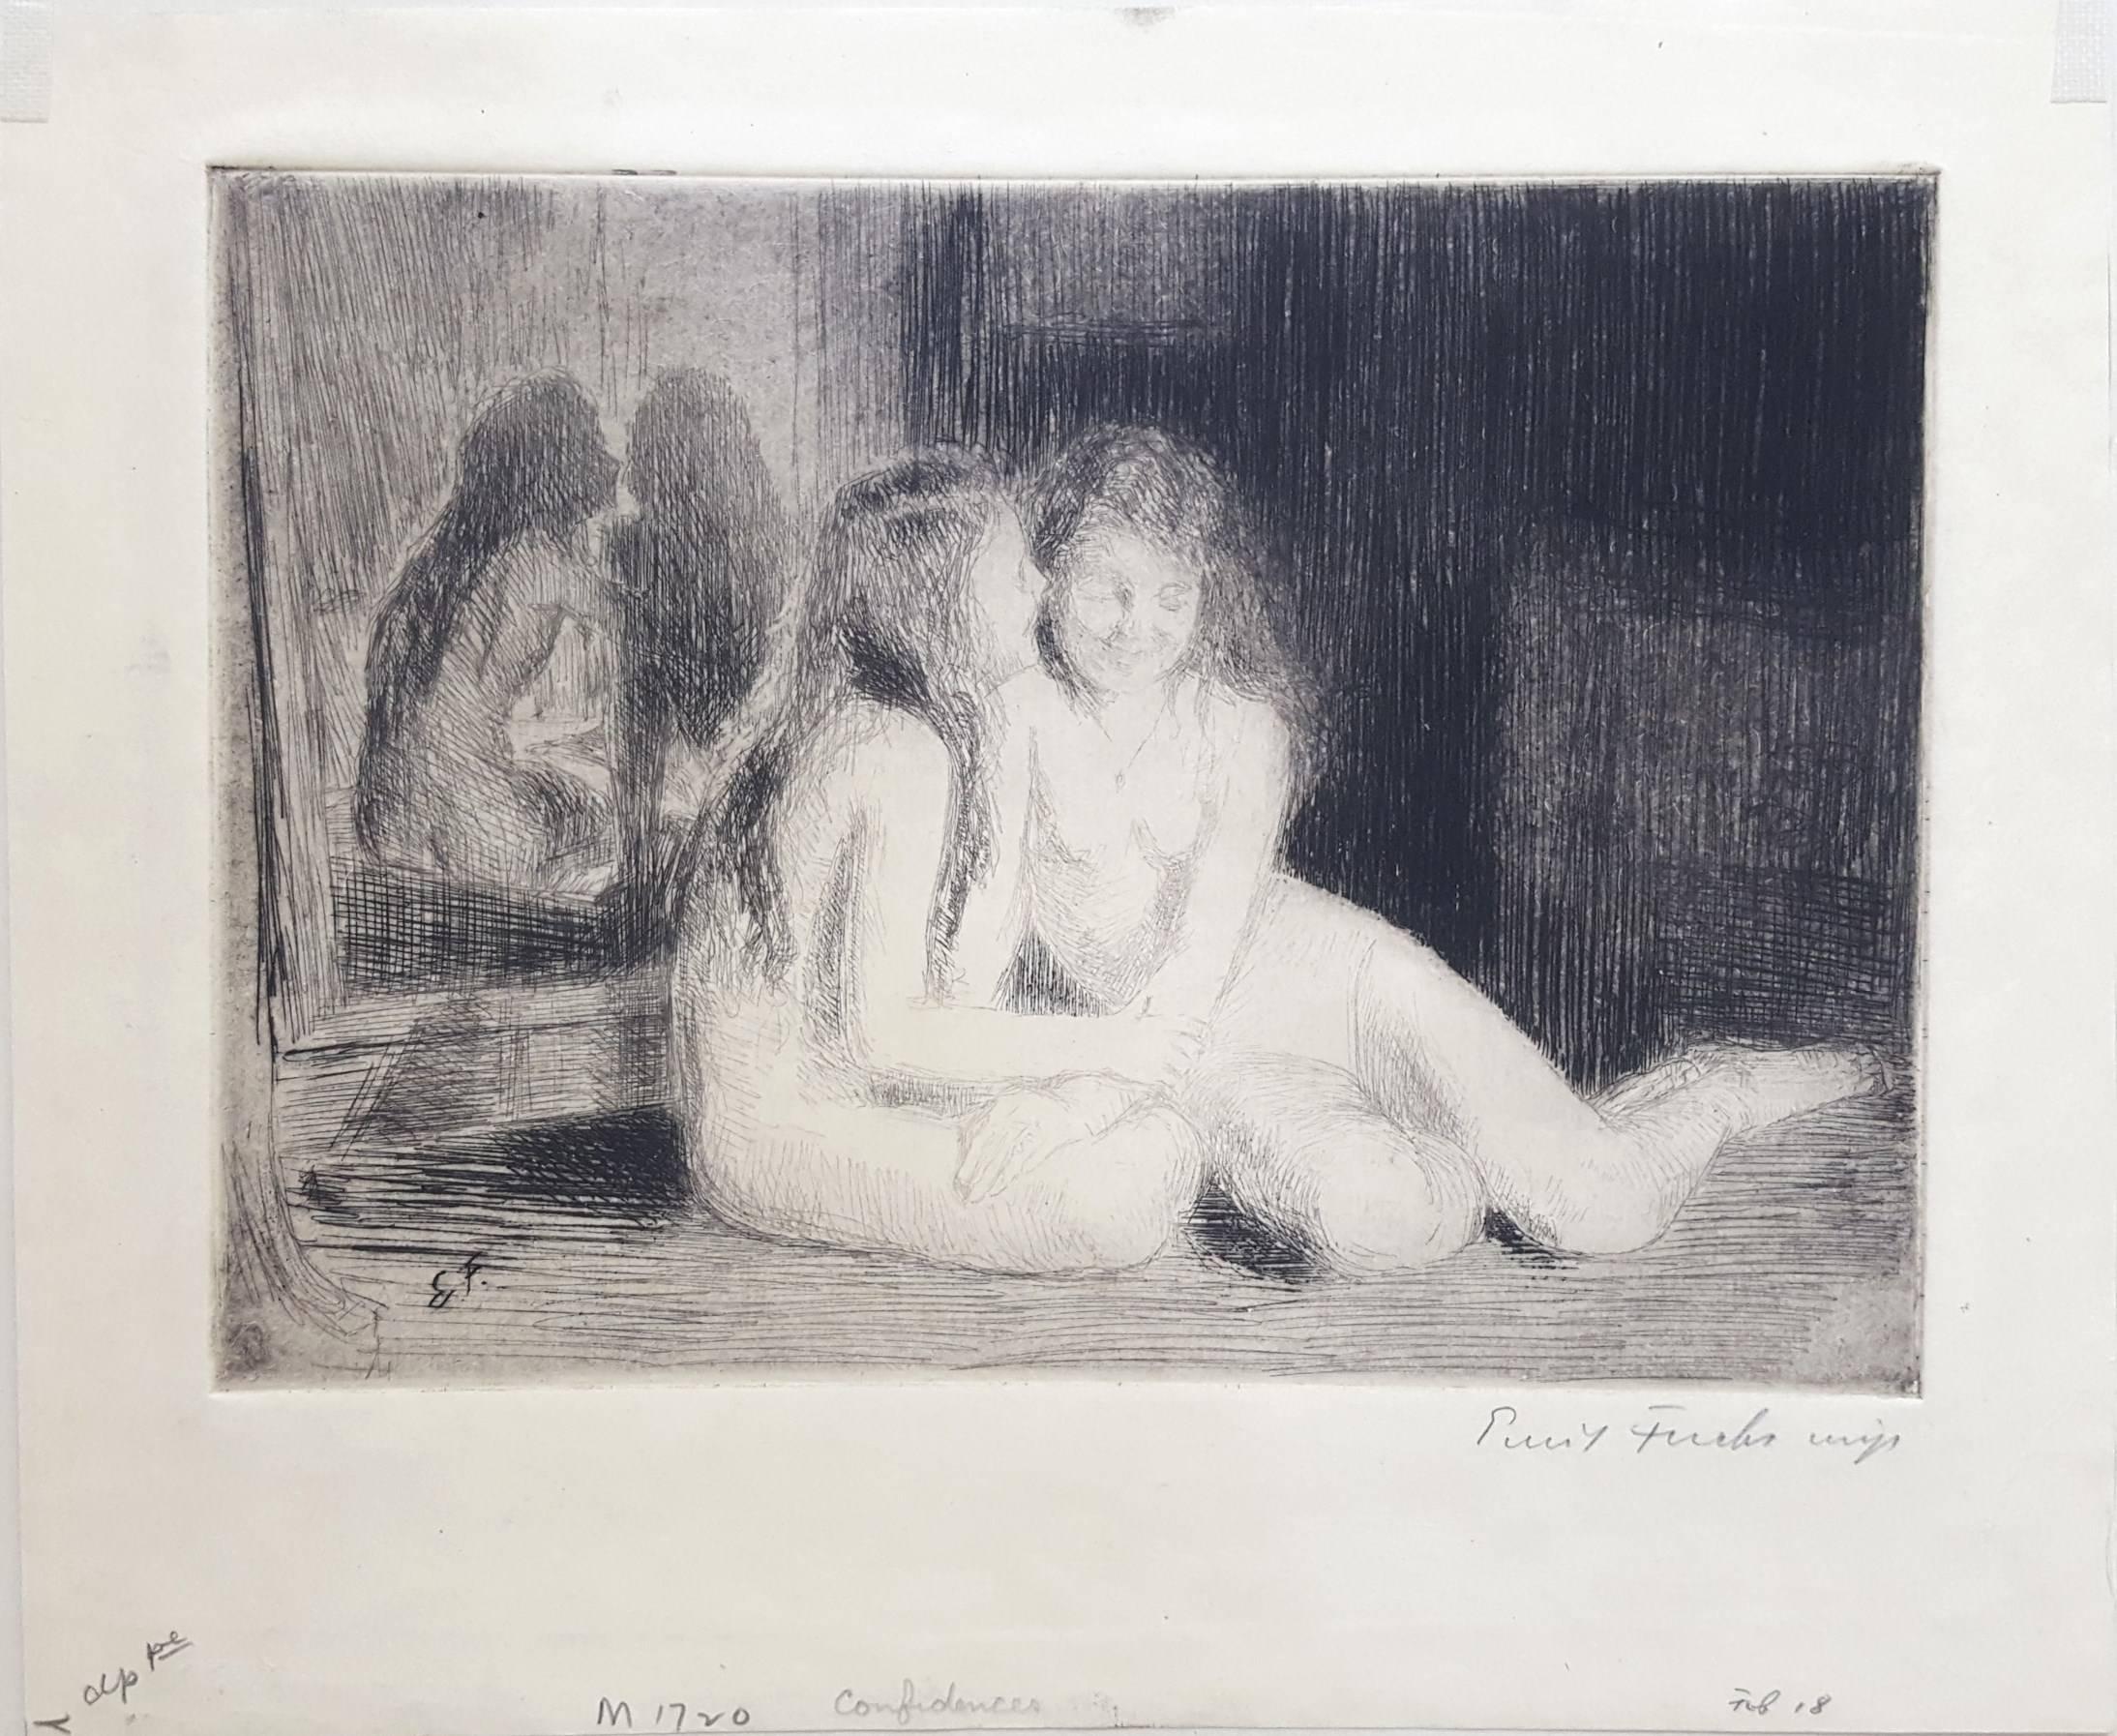 Confidences /// Gravure moderne ancienne figurative de jeunes filles nues Impressionniste - Print de Emil Fuchs